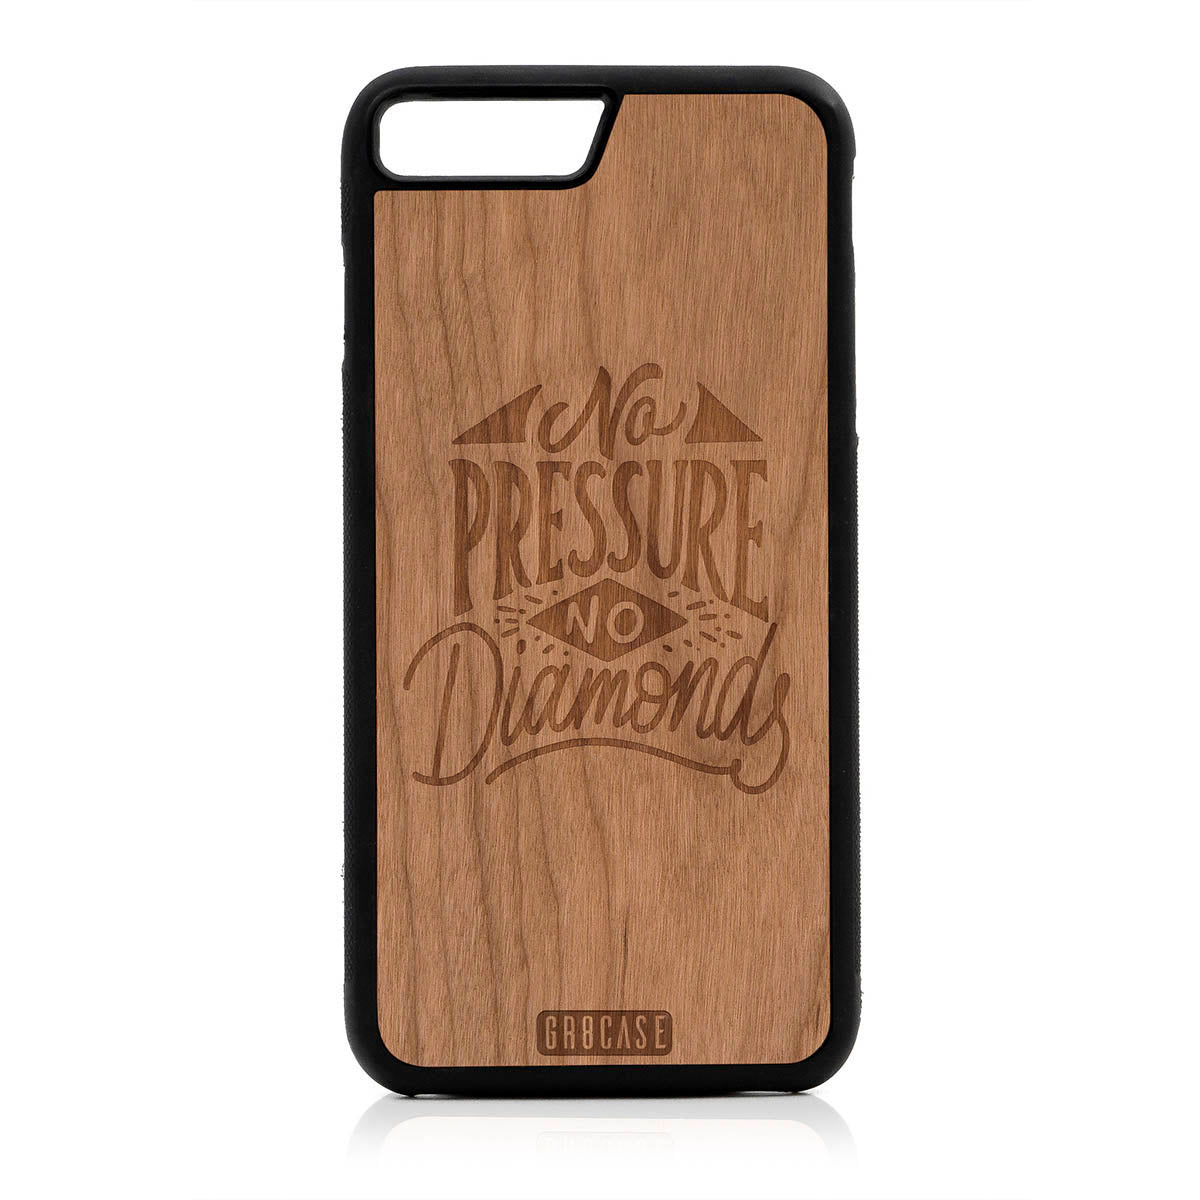 No Pressure No Diamonds Design Wood Case For iPhone 7 Plus / 8 Plus